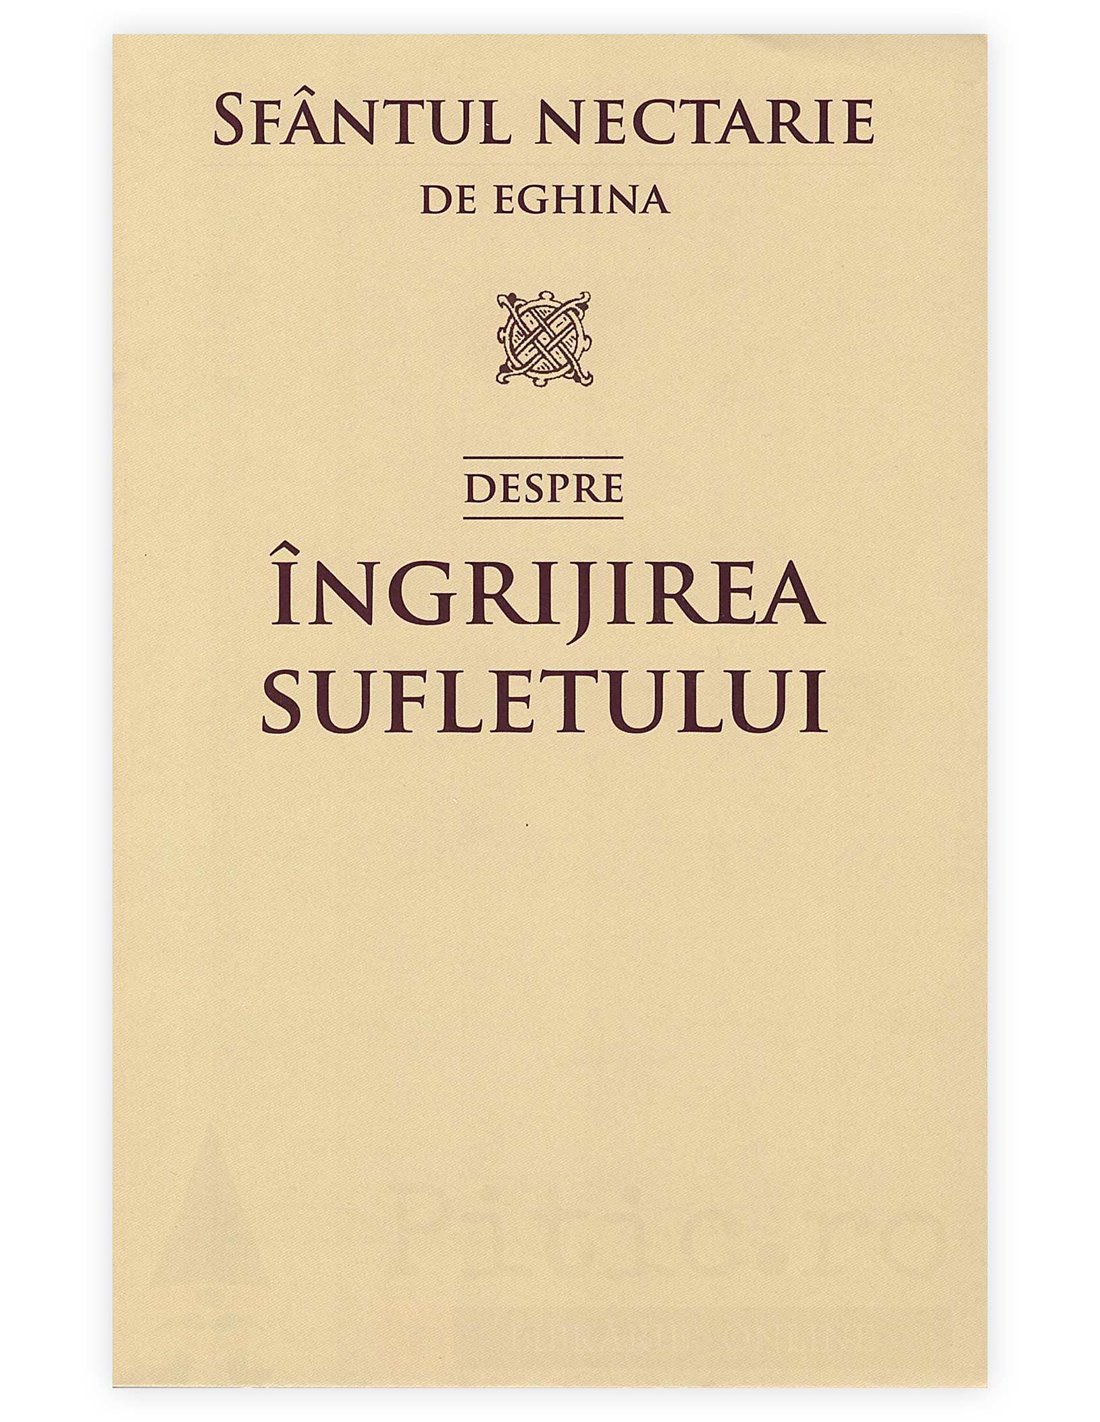 Despre ingrijirea sufletului - Sfantul Nectarie de Eghina | Editura Sophia